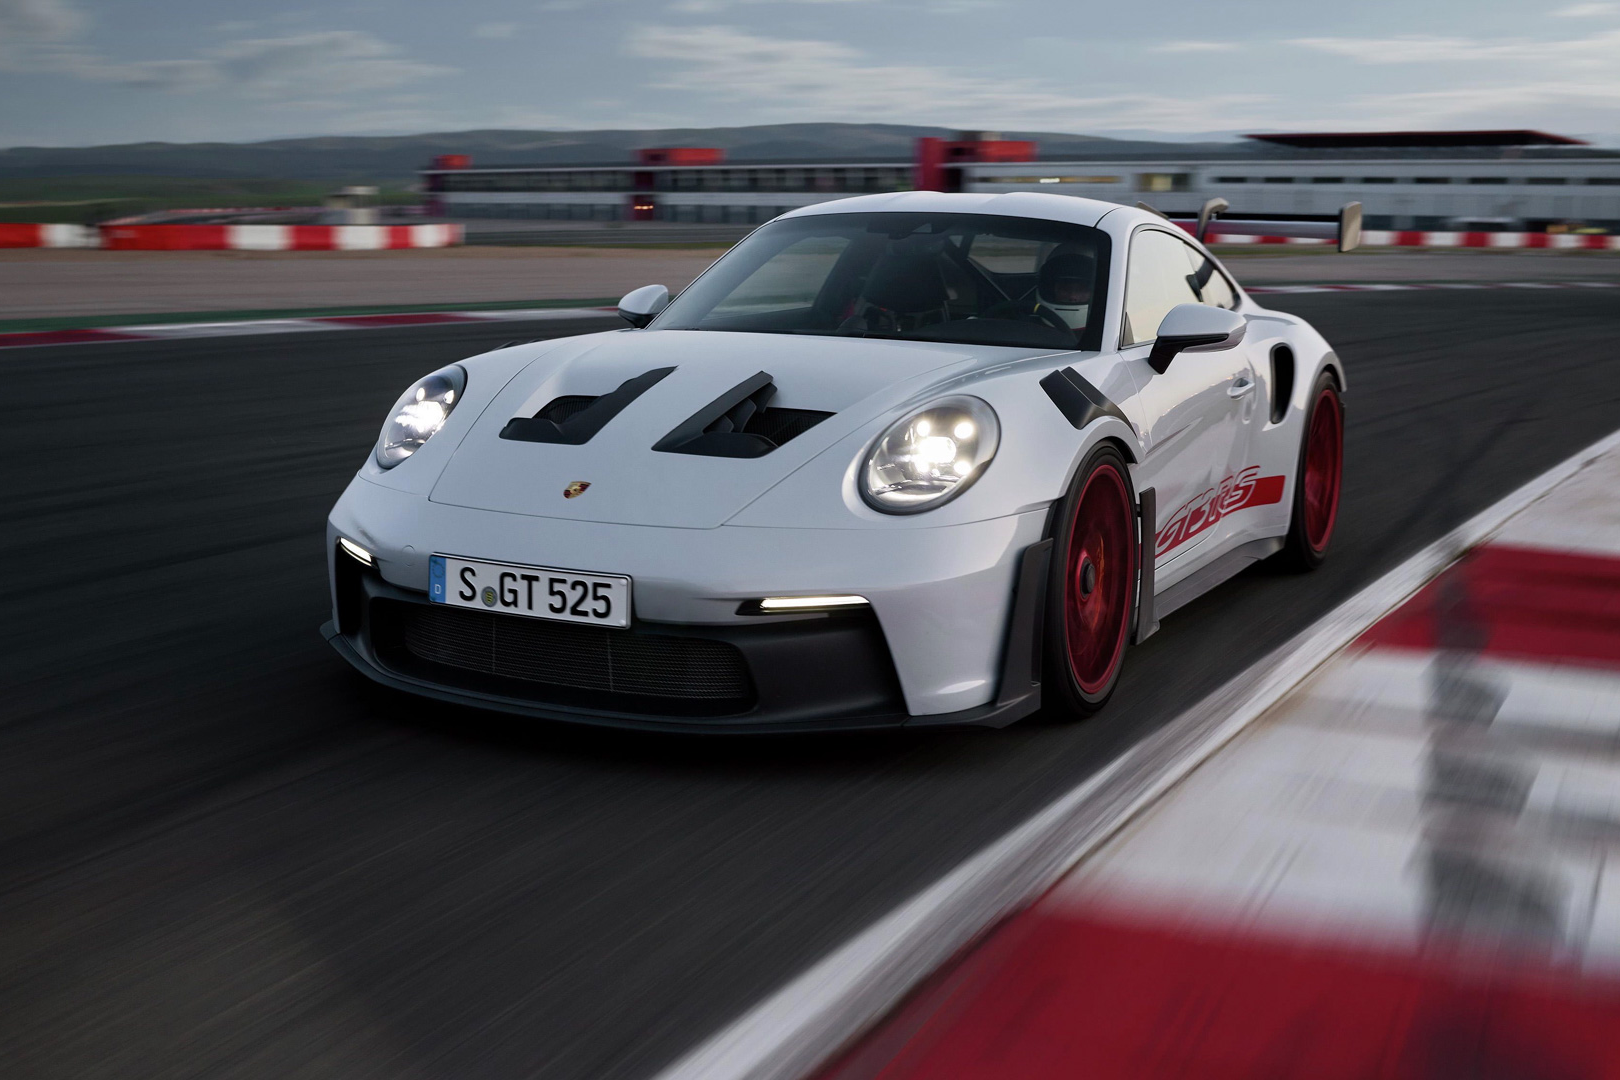 Chi tiết Porsche 911 GT3 RS thế hệ mới - ảnh 20